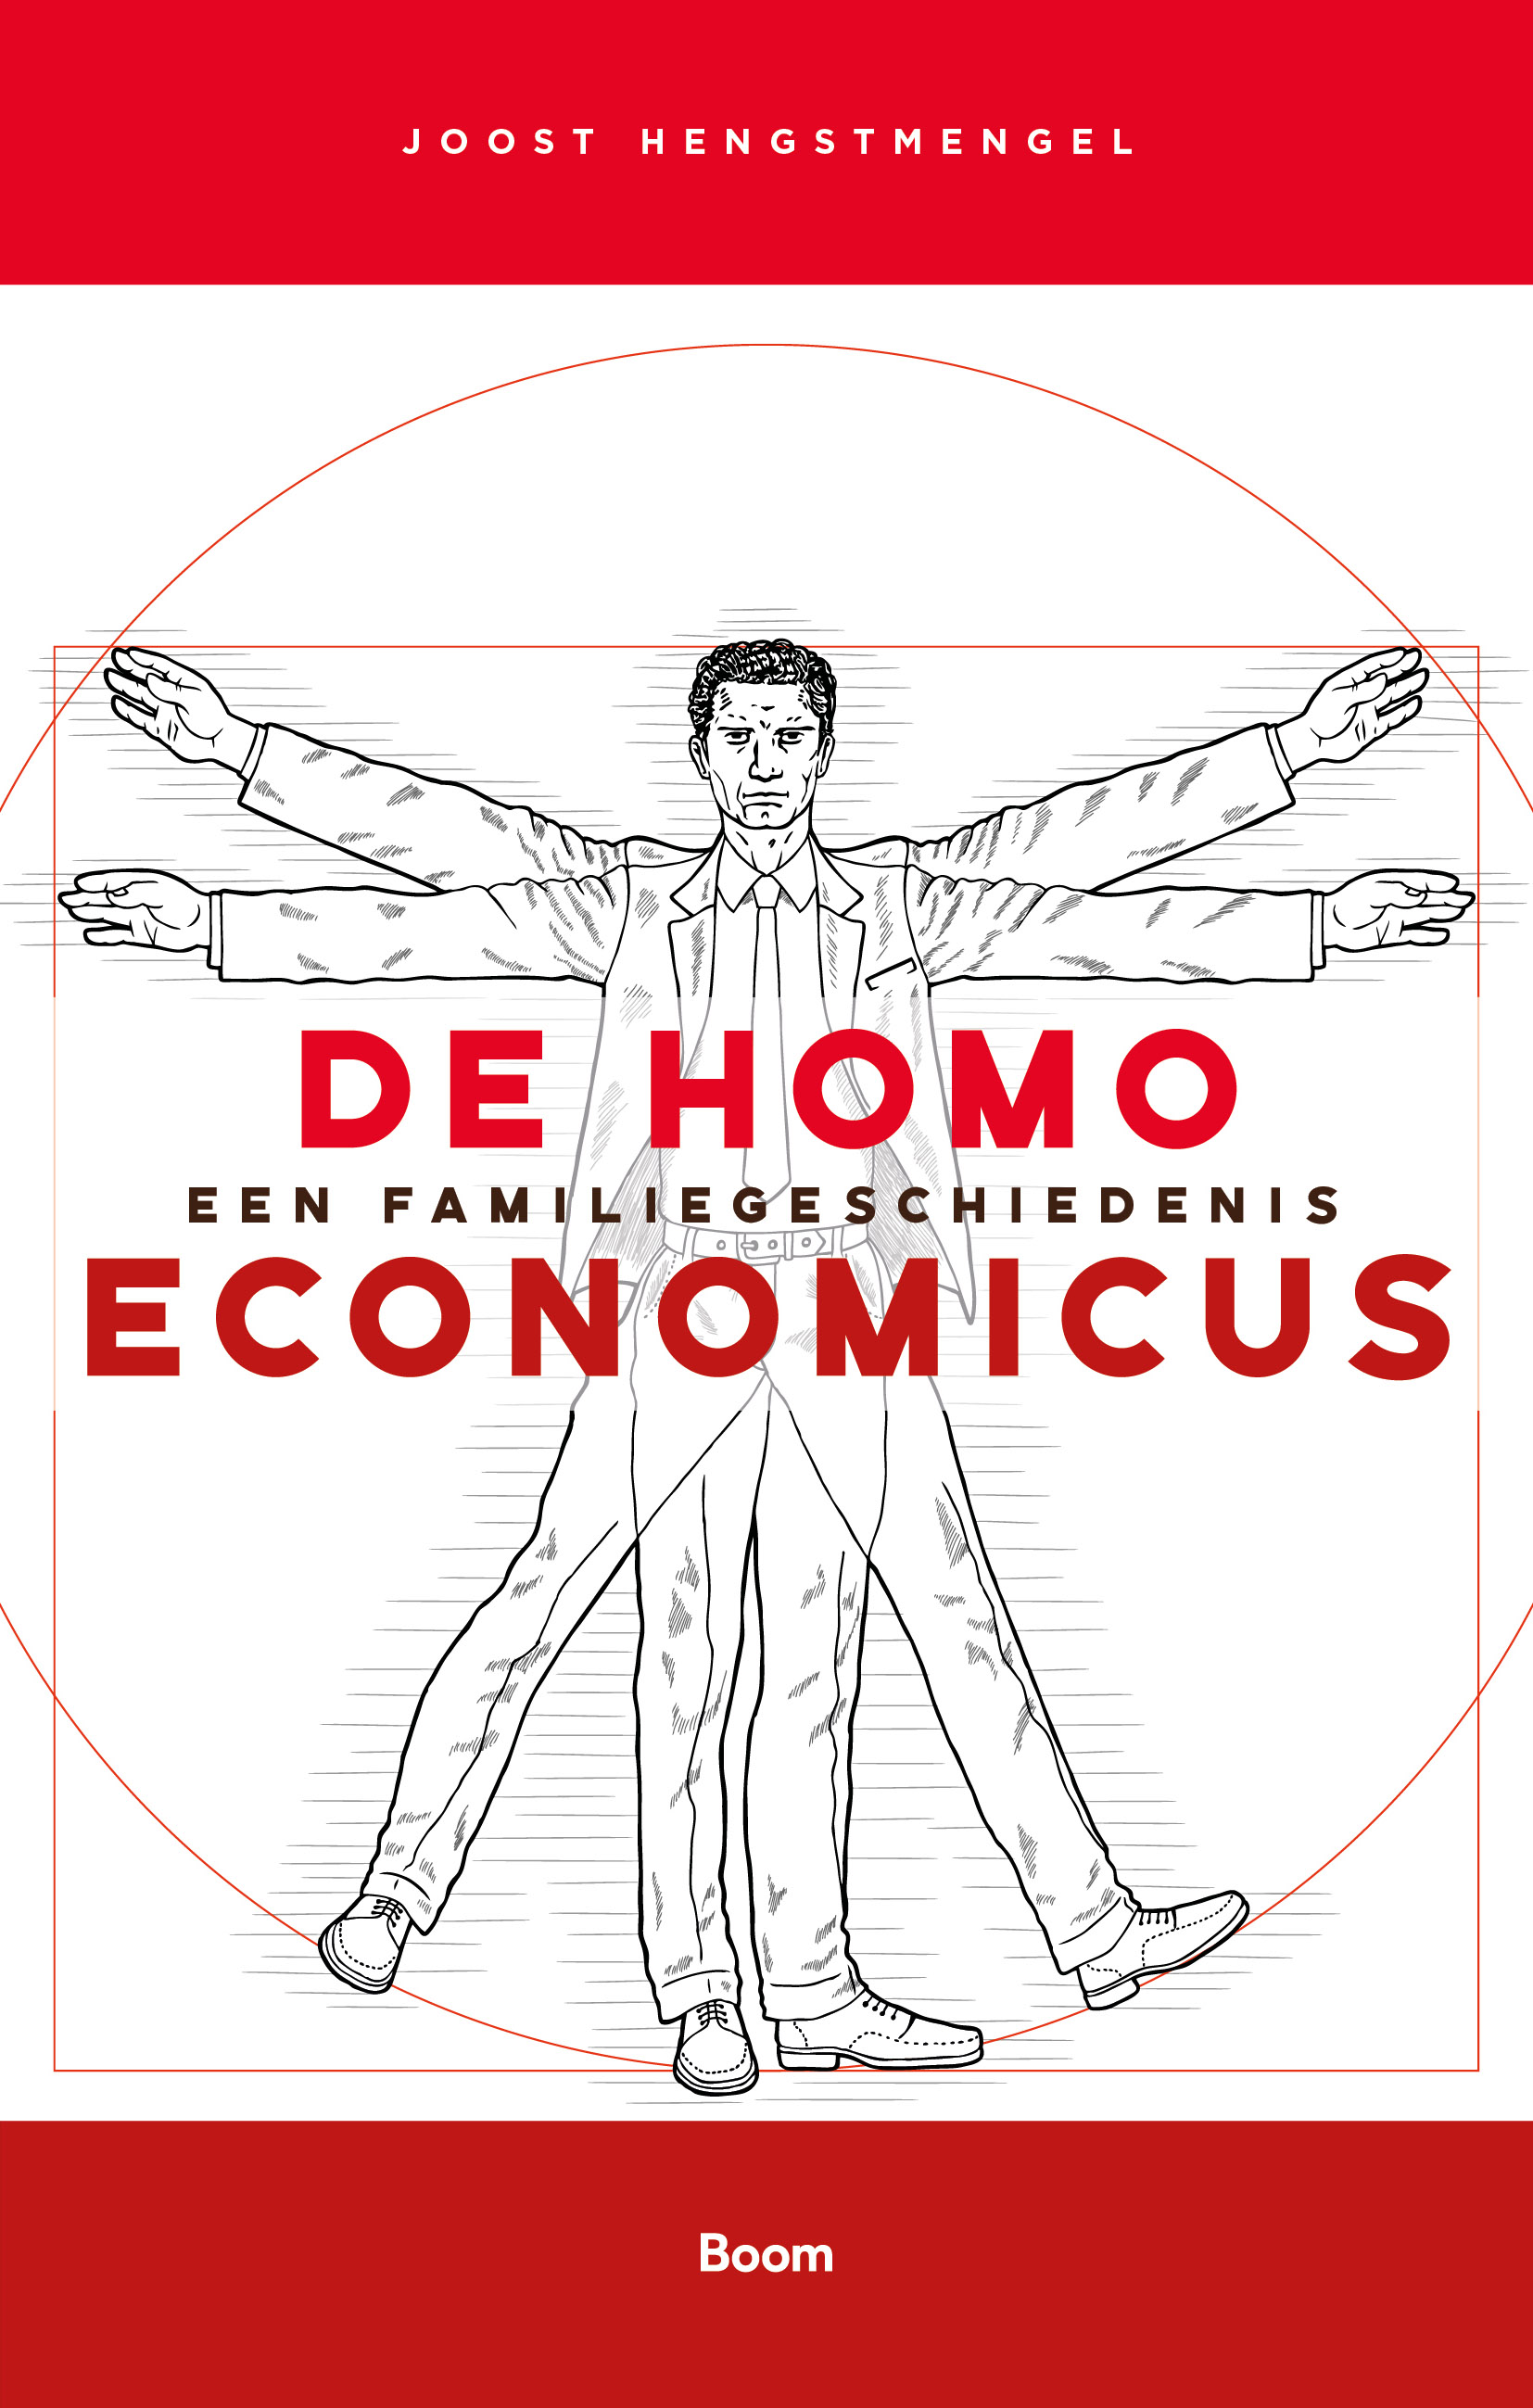 De homo economicus. Een familiegeschiedenis